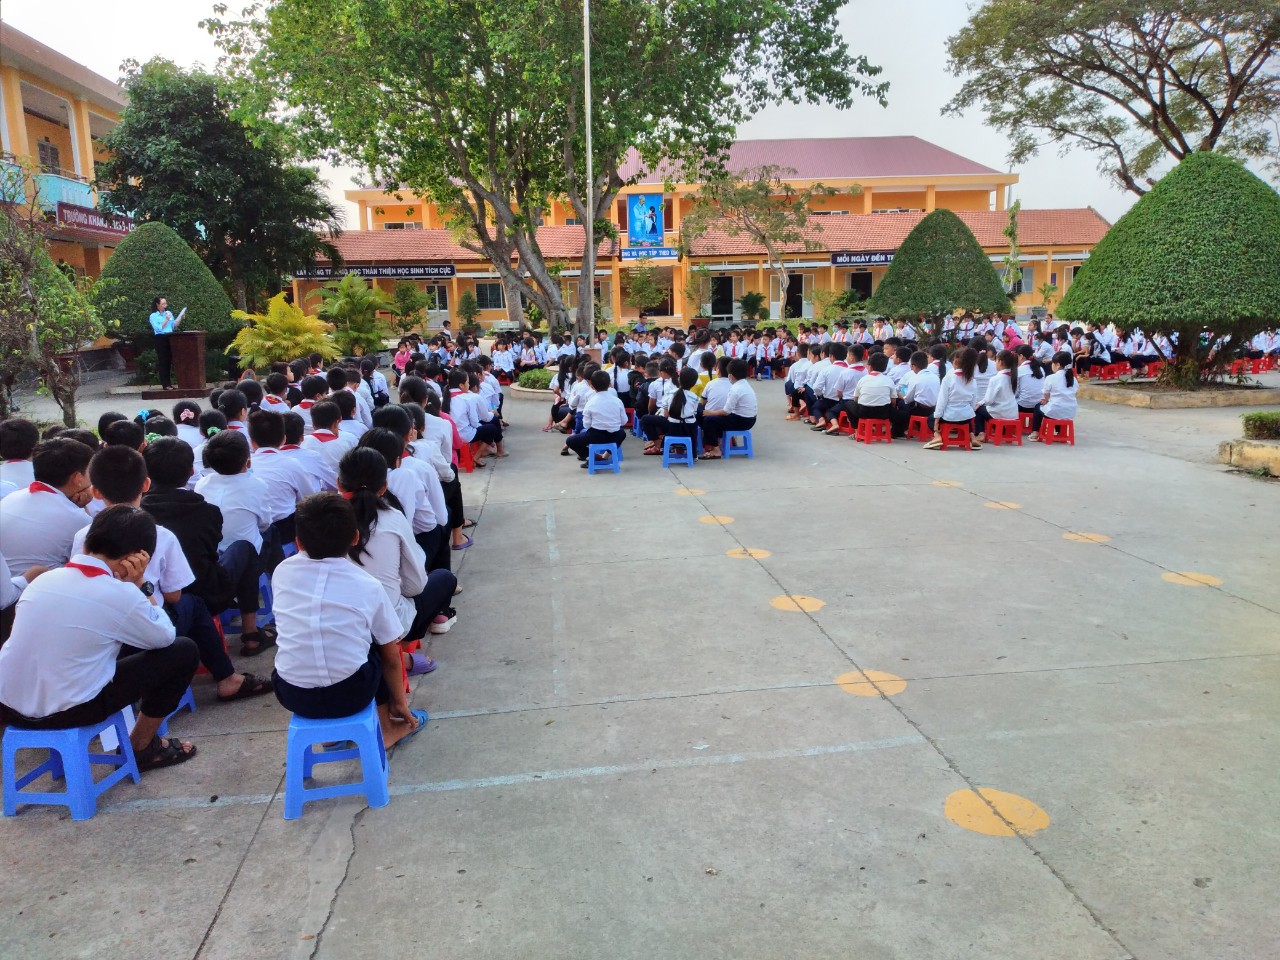 Quyết định 4246/QĐ-BGDĐT của Bộ Giáo dục và Đào tạo Phê duyệt tài liệu hướng dẫn giáo viên tích hợp giáo dục lý tưởng cách mạng, đạo đức, lối sống cho học sinh tiểu học trong các môn học (Đạo đức, Tiếng Việt, Hoạt động trải nghiệm).